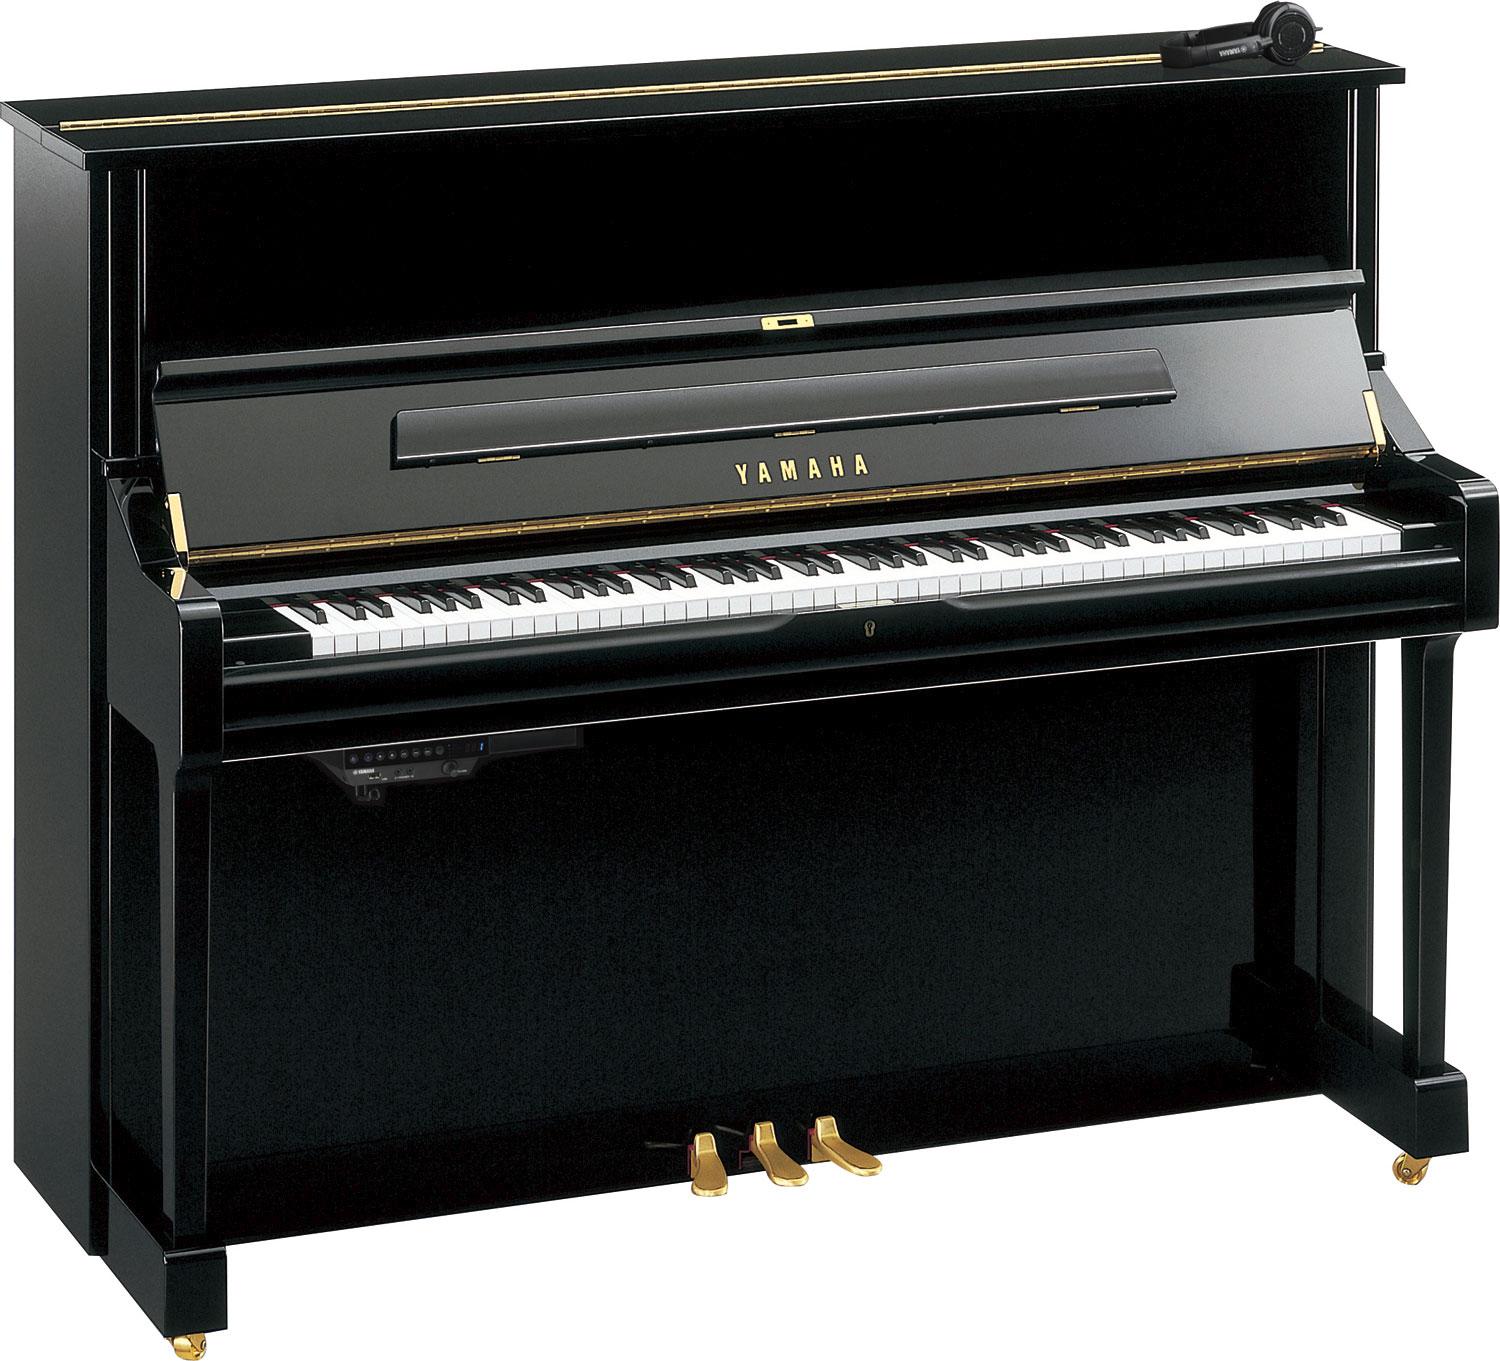 Piano vertical Yamaha U1 Silent: ideal para profesionales y estudiantes